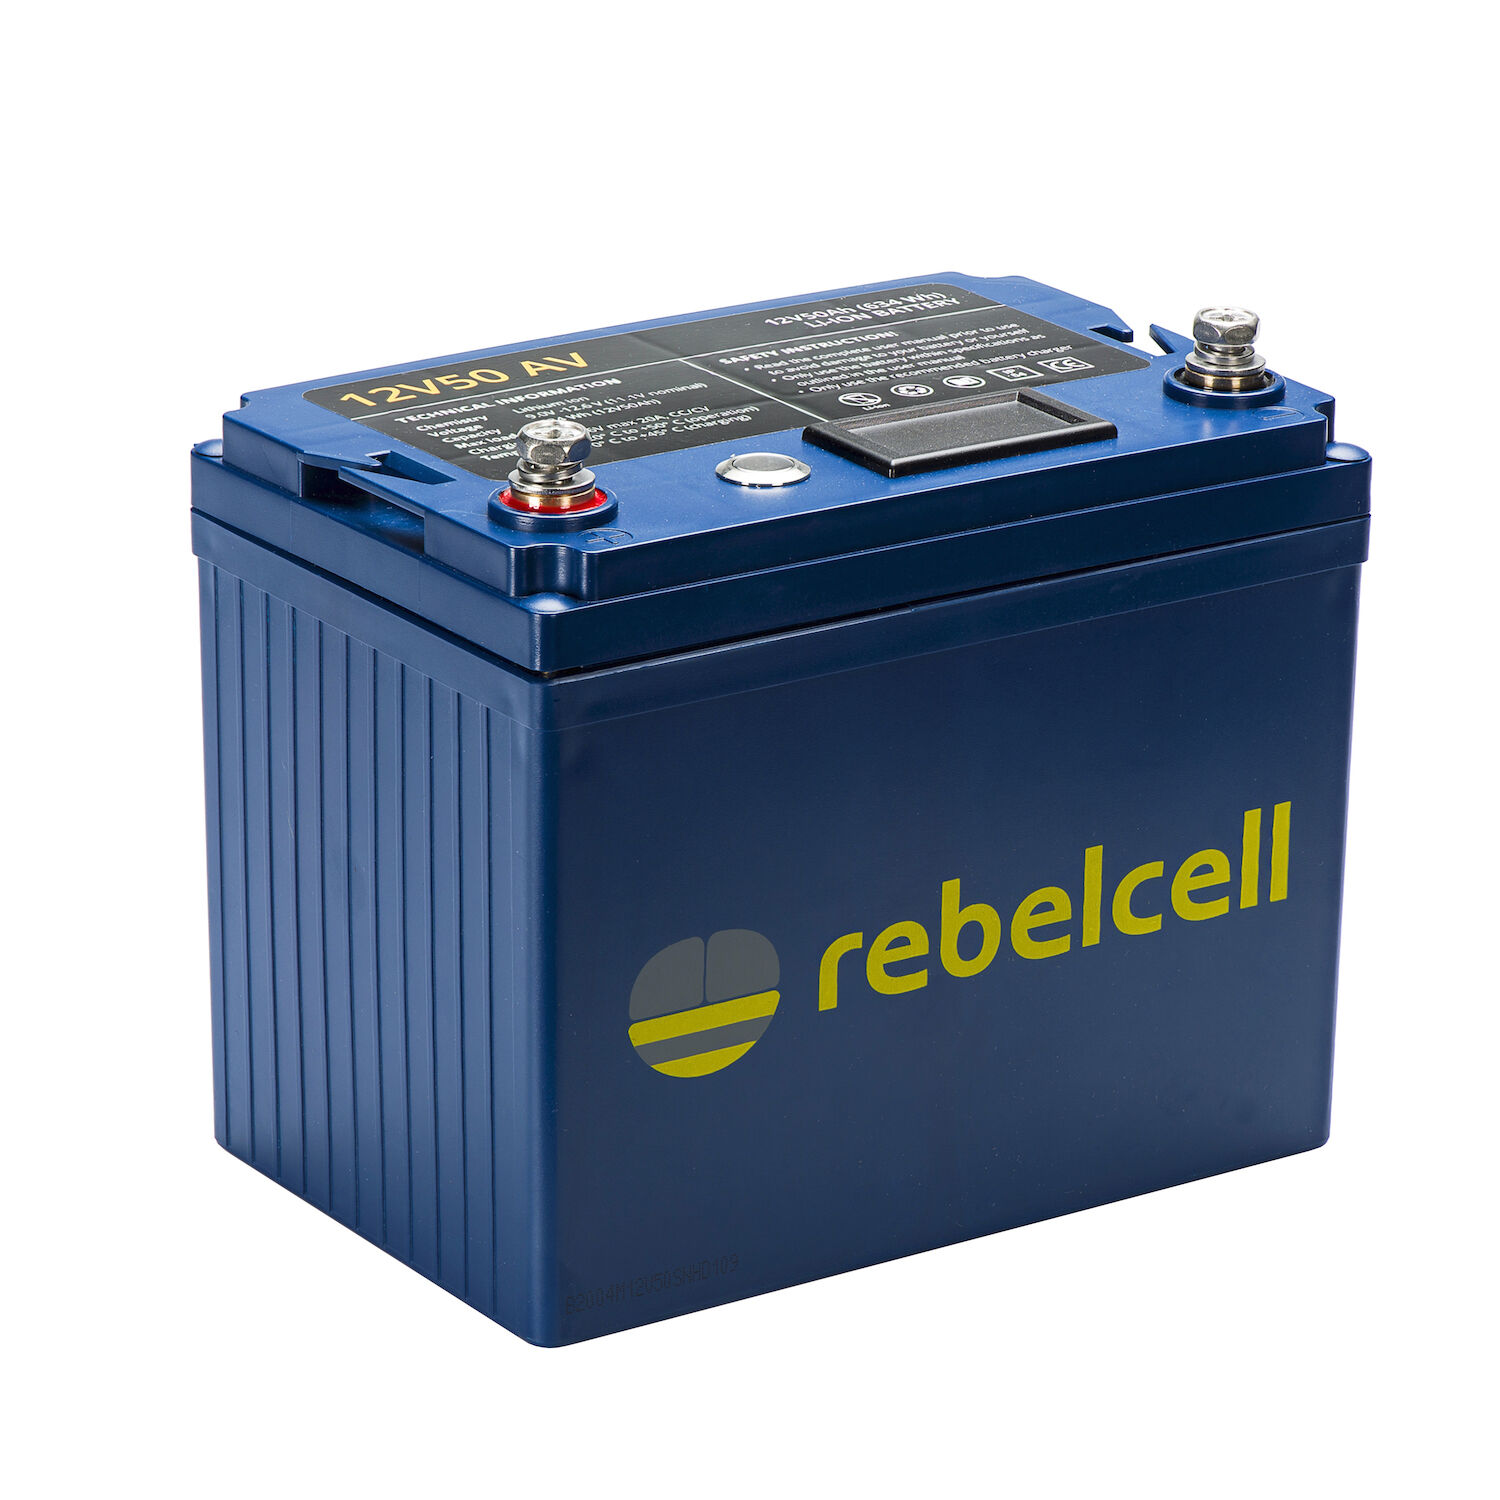 RebelCell 12V50 AV Lithium Batterie (12V 50Ah) 632Wh